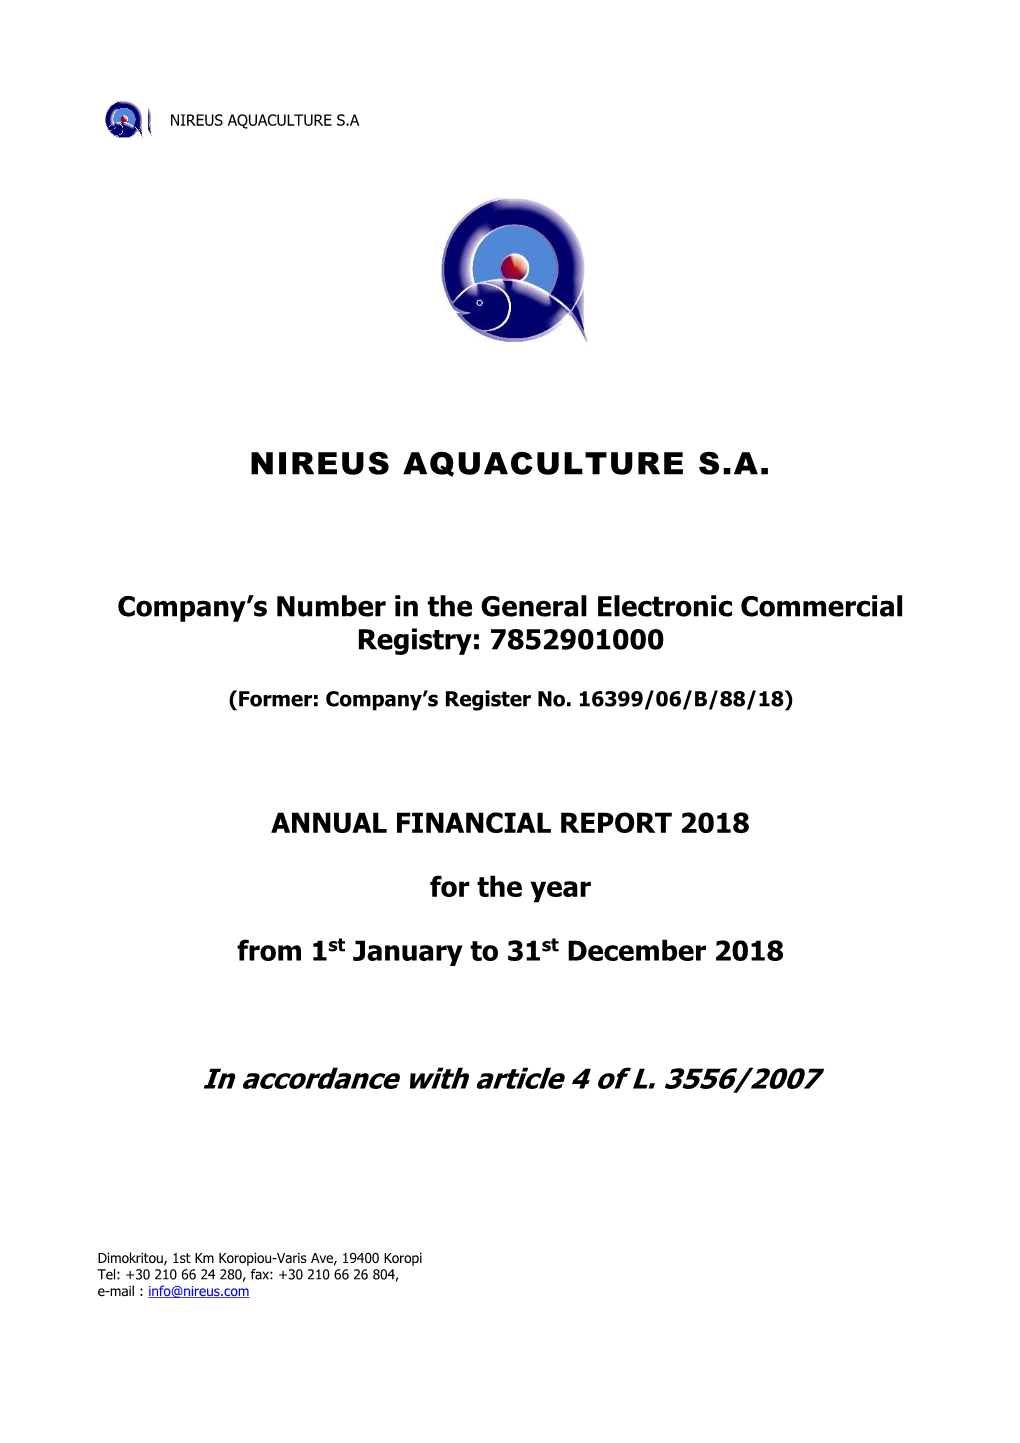 Nireus Aquaculture Sa